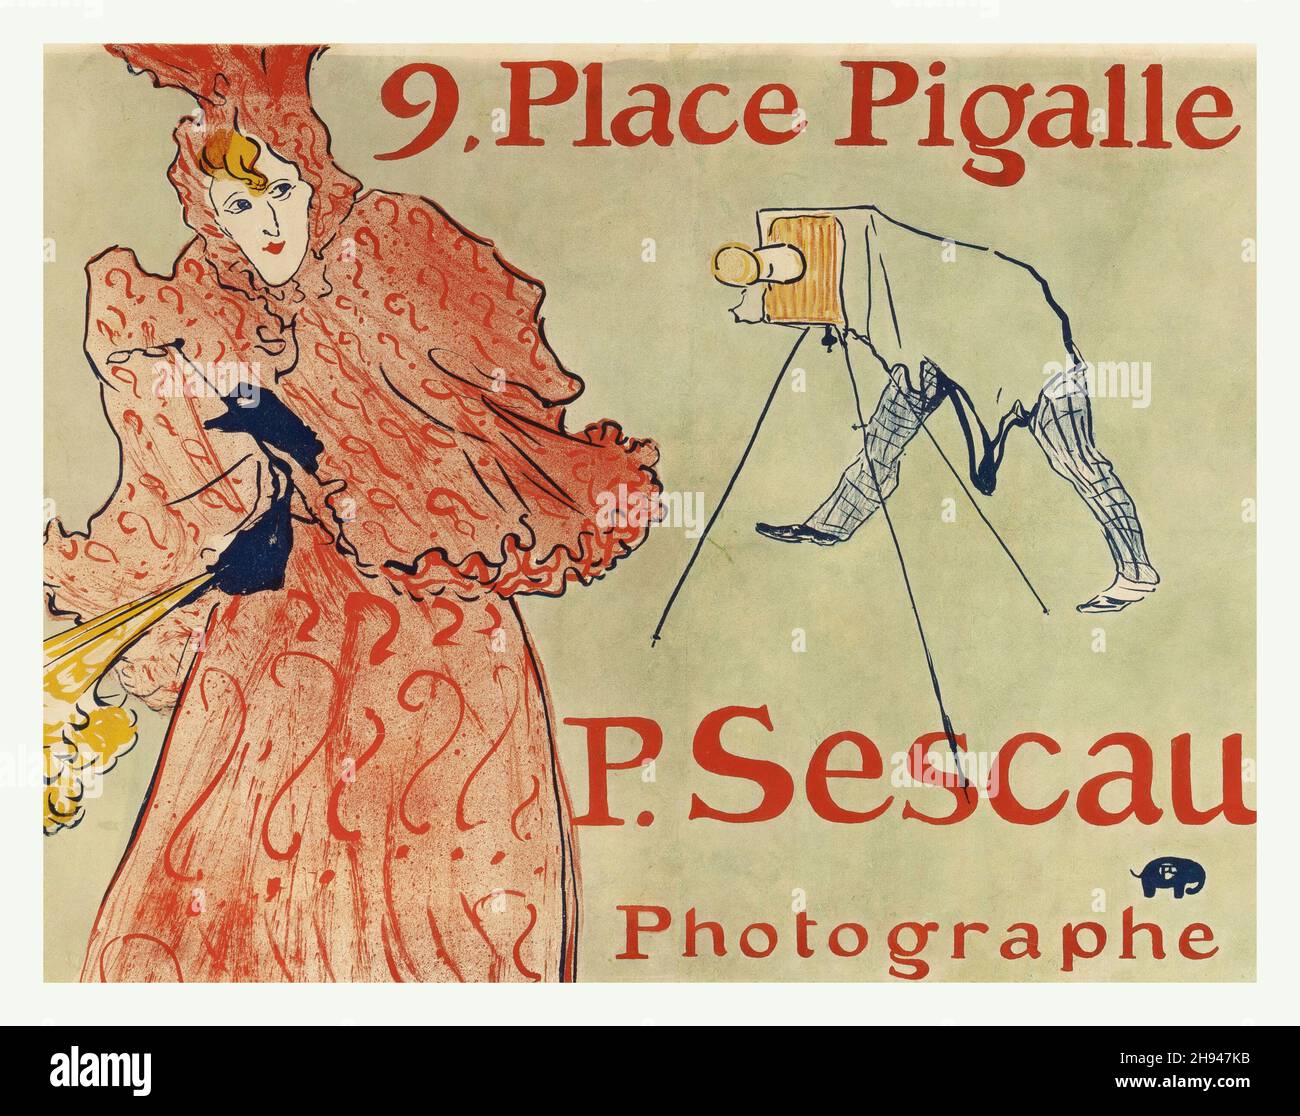 HENRI DE TOULOUSE-LAUTREC (French, 1864-1901) Le Photographe Sescau, 9 Place Pigalle Stock Photo